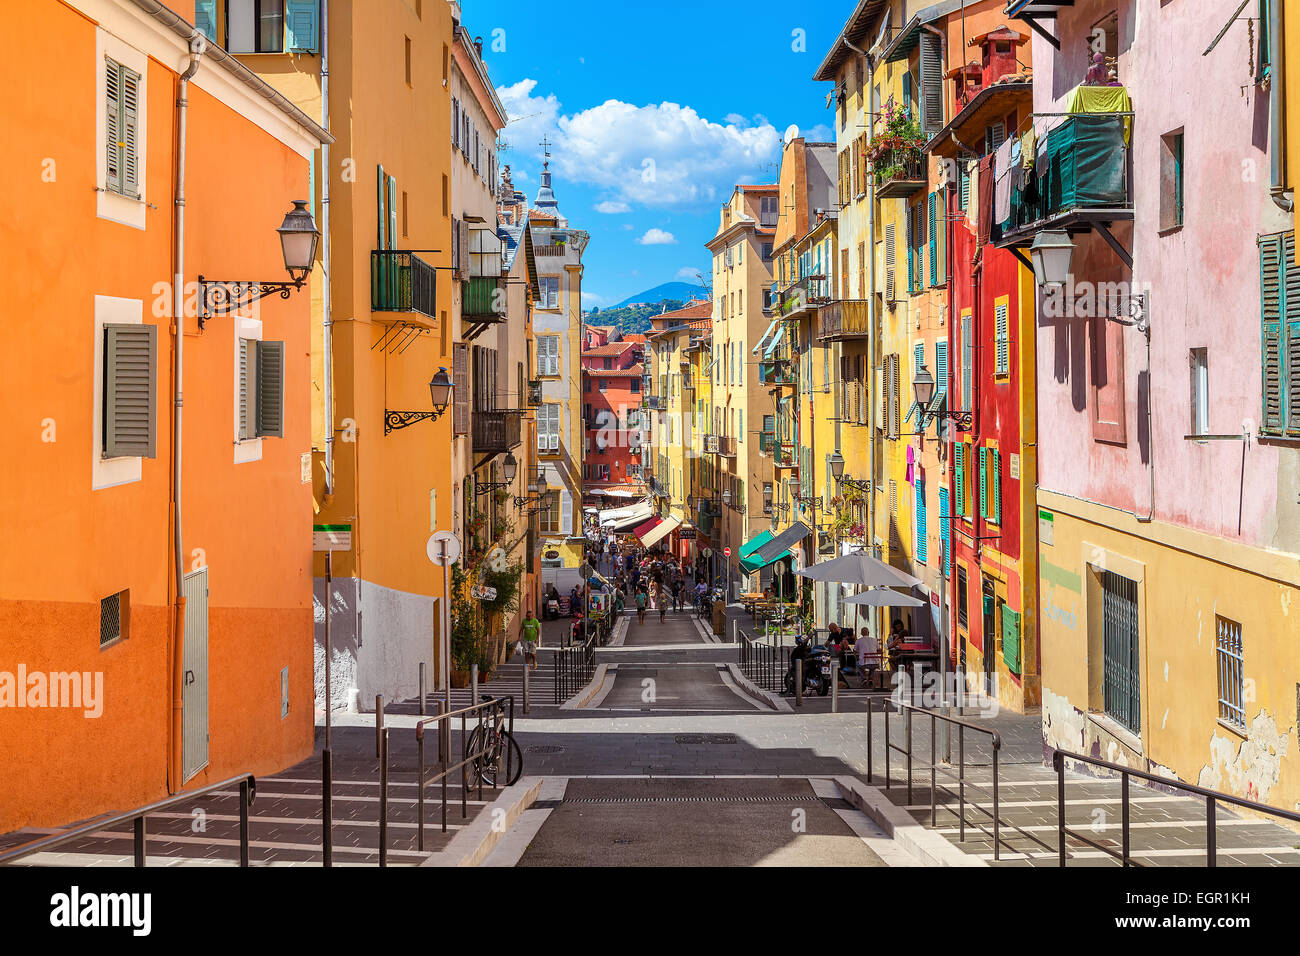 Gasse in touristischen Altstadt von Nizza, Frankreich. Stockfoto